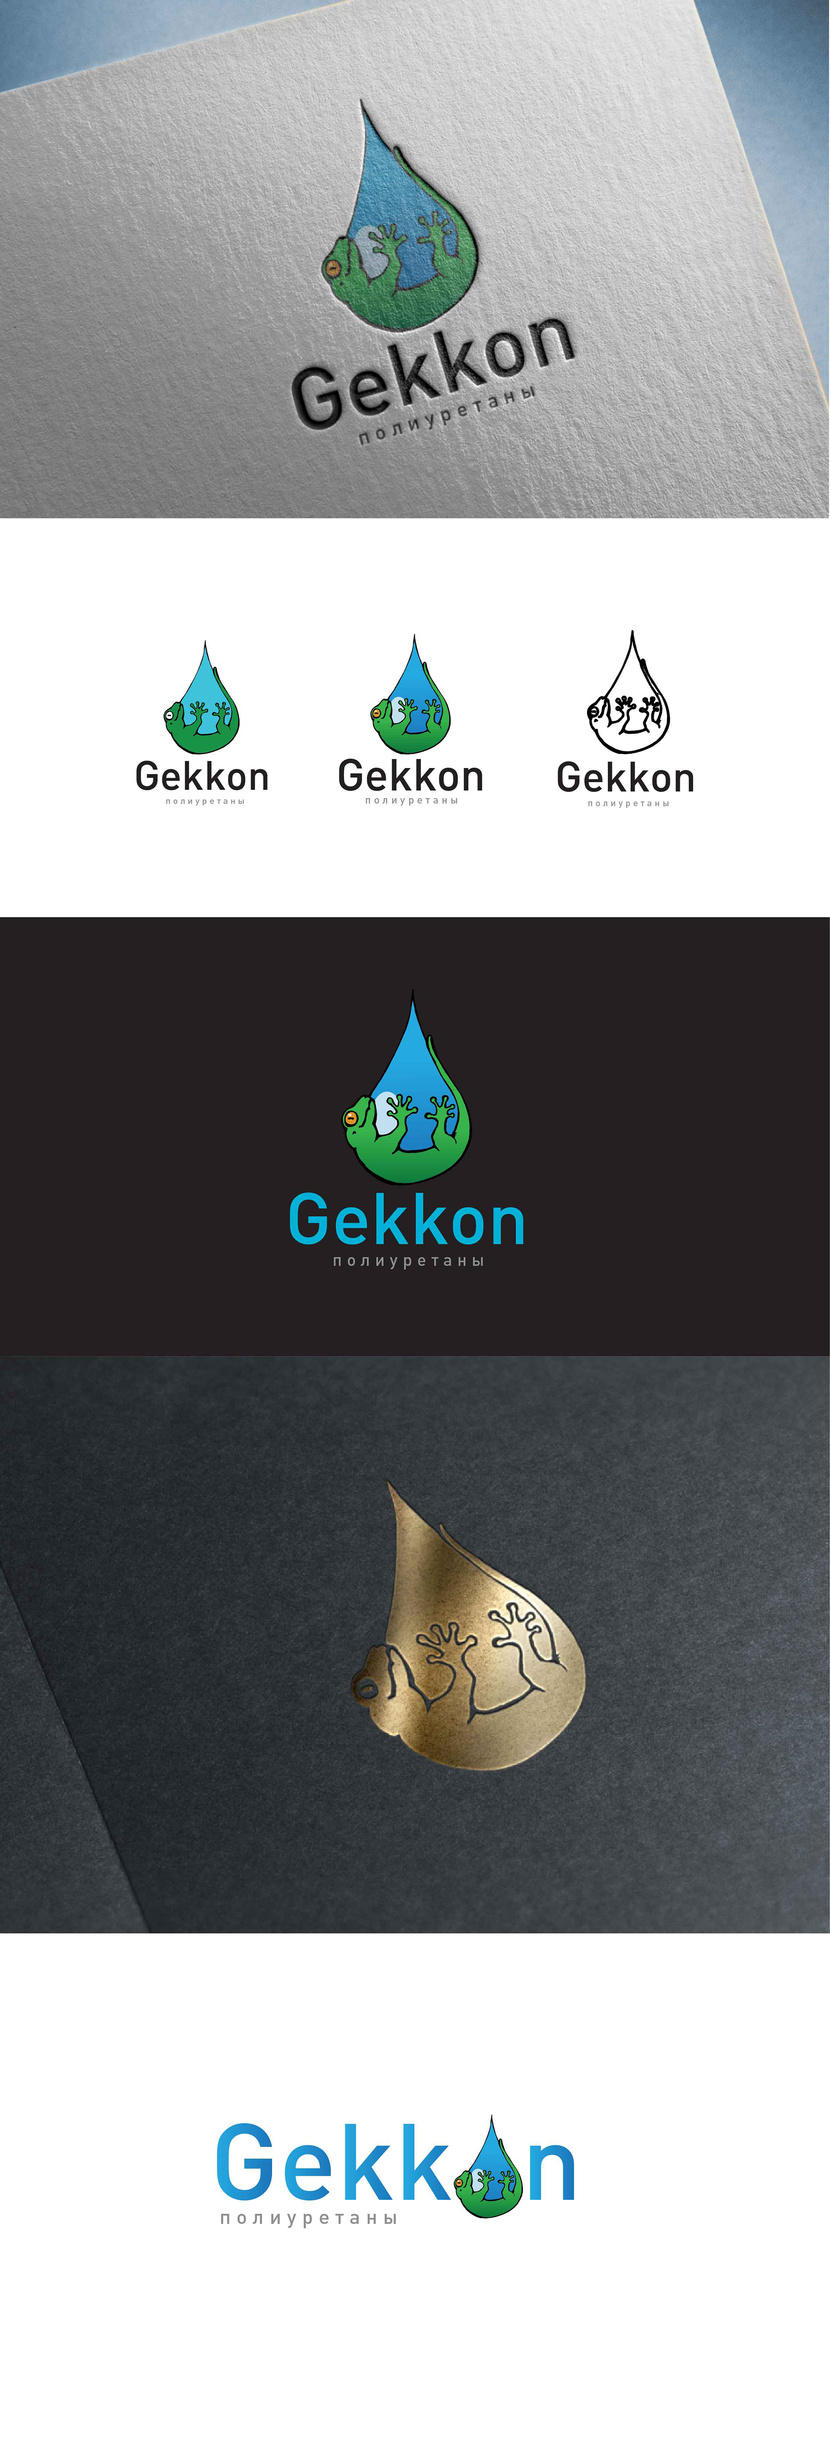 2 - Логотип для производства полиуретановых материалов марки "Gekkon"